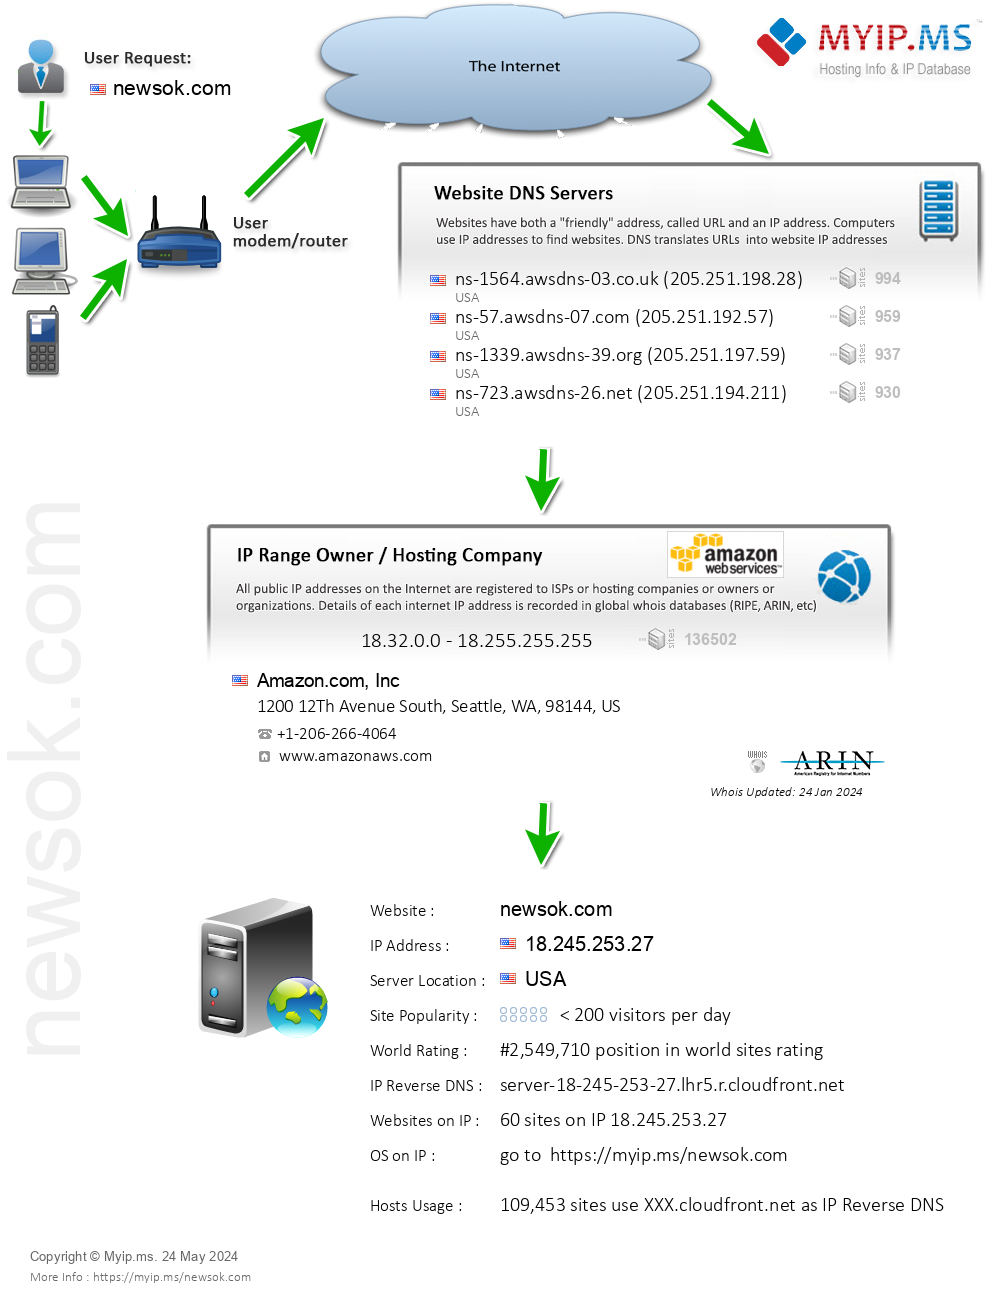 Newsok.com - Website Hosting Visual IP Diagram